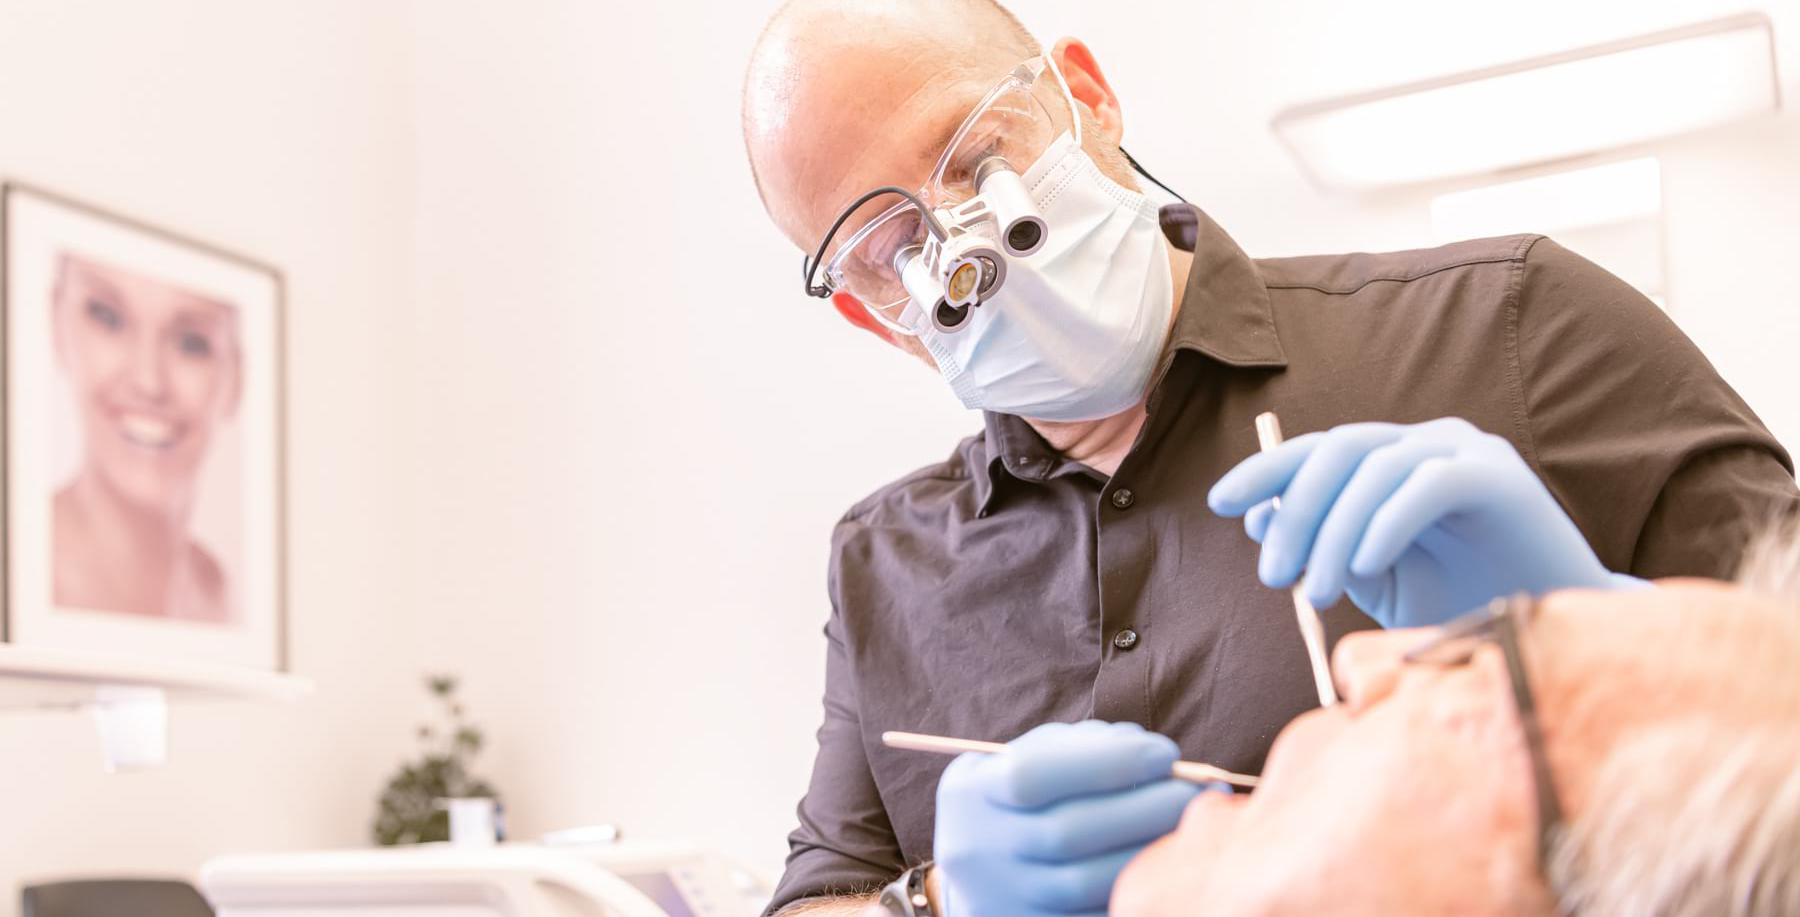 Médecine dentaire : L'Ordre national appelle à "fermer définitivement" les cabinets illégaux